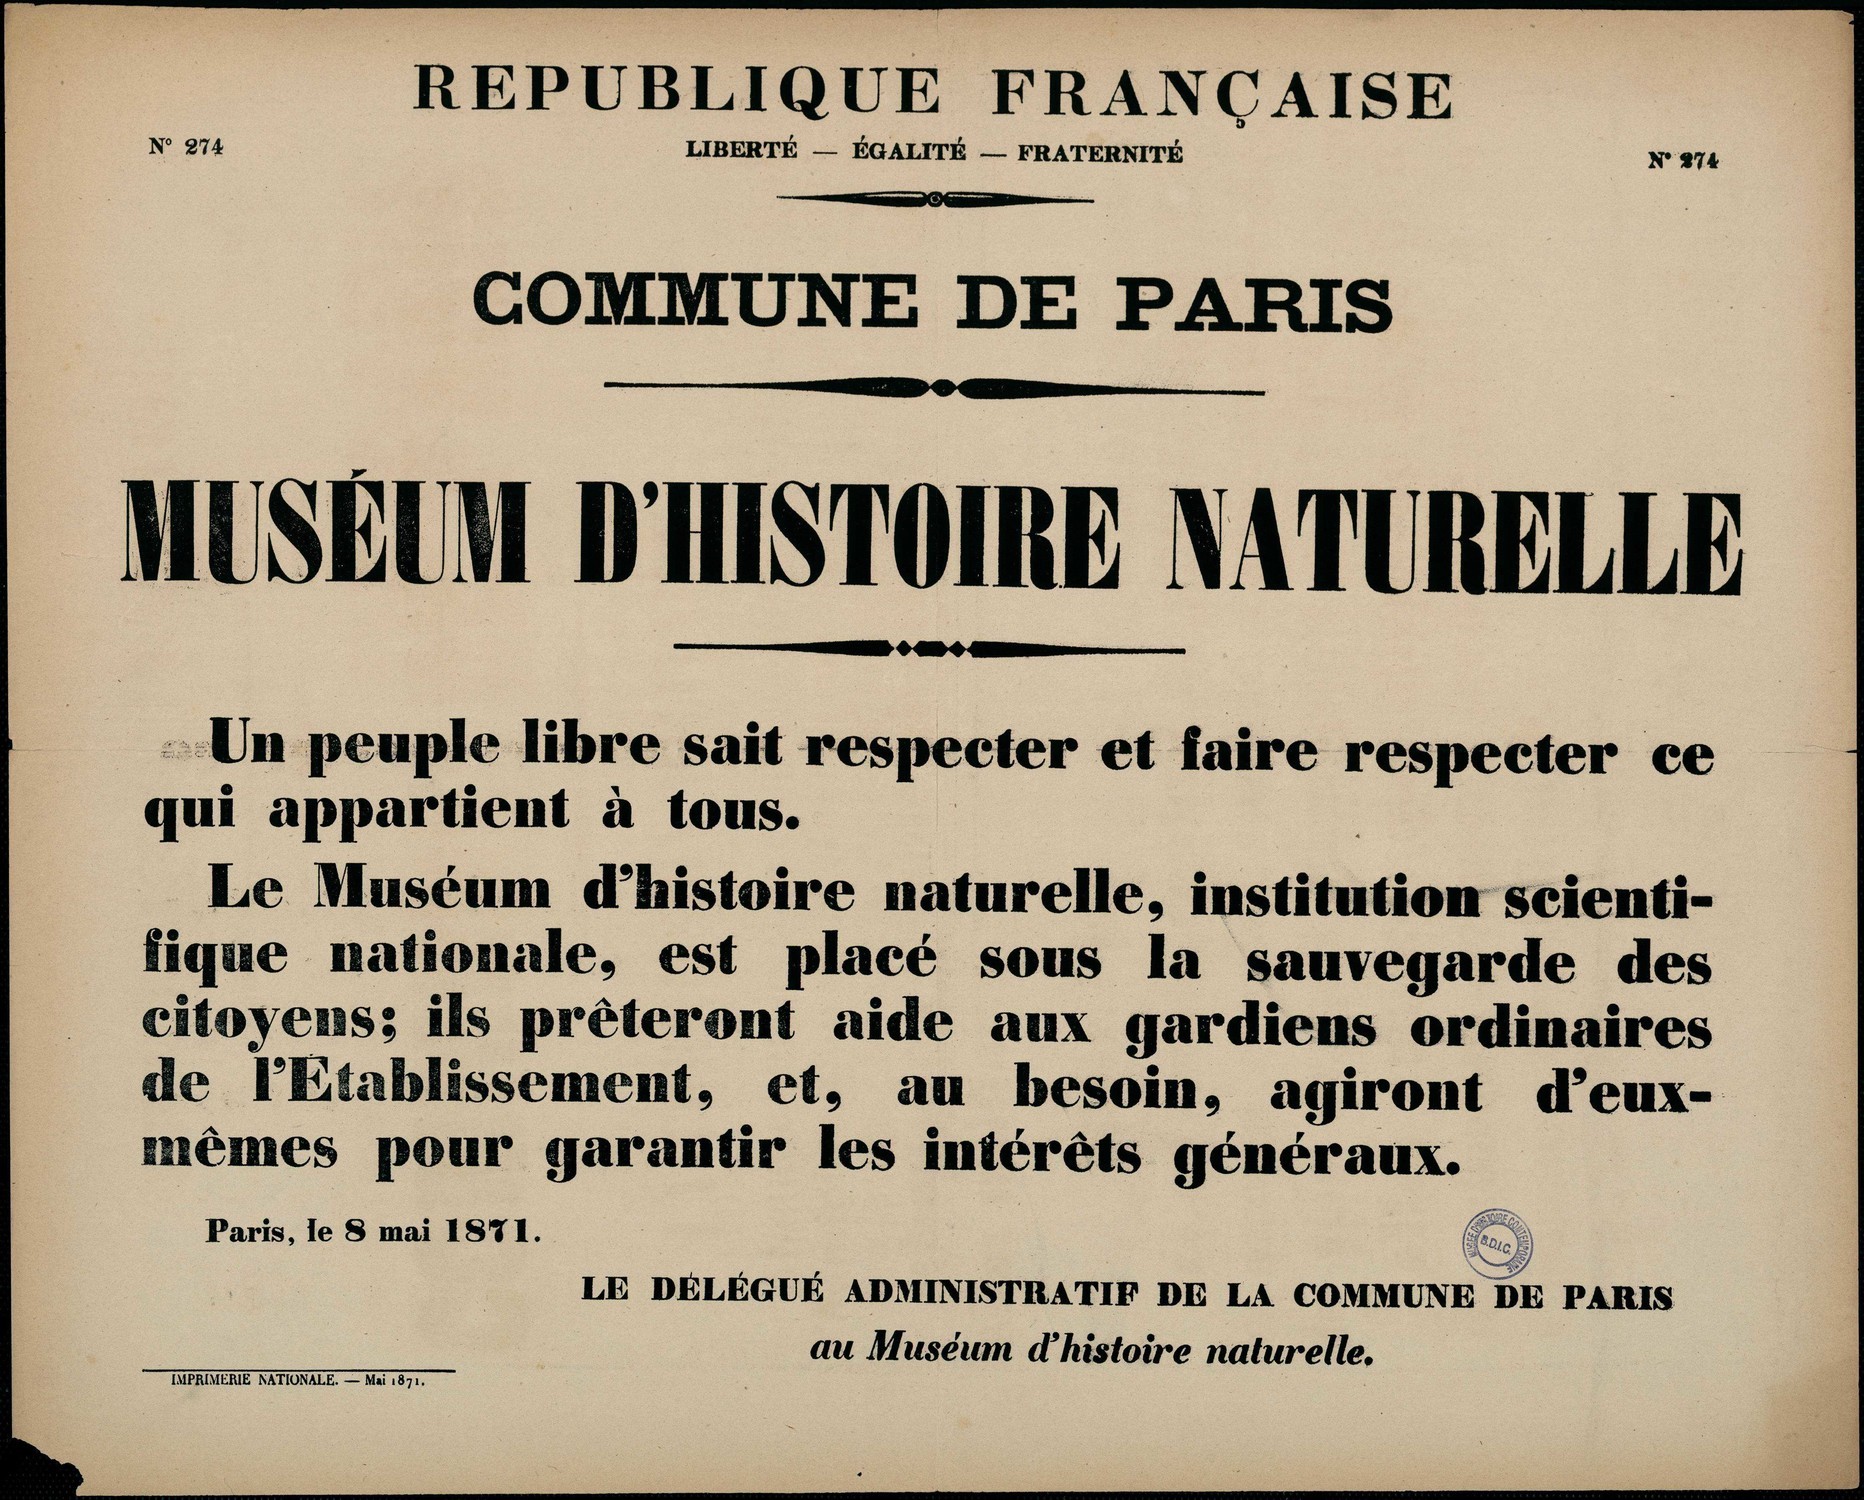 Affiche de la Commune de Paris N° 274 du 8 mai 1871 - Muséum d'Histoire Naturelle (source : La Contemporaine – Nanterre / argonnaute.parisnanterre.fr)